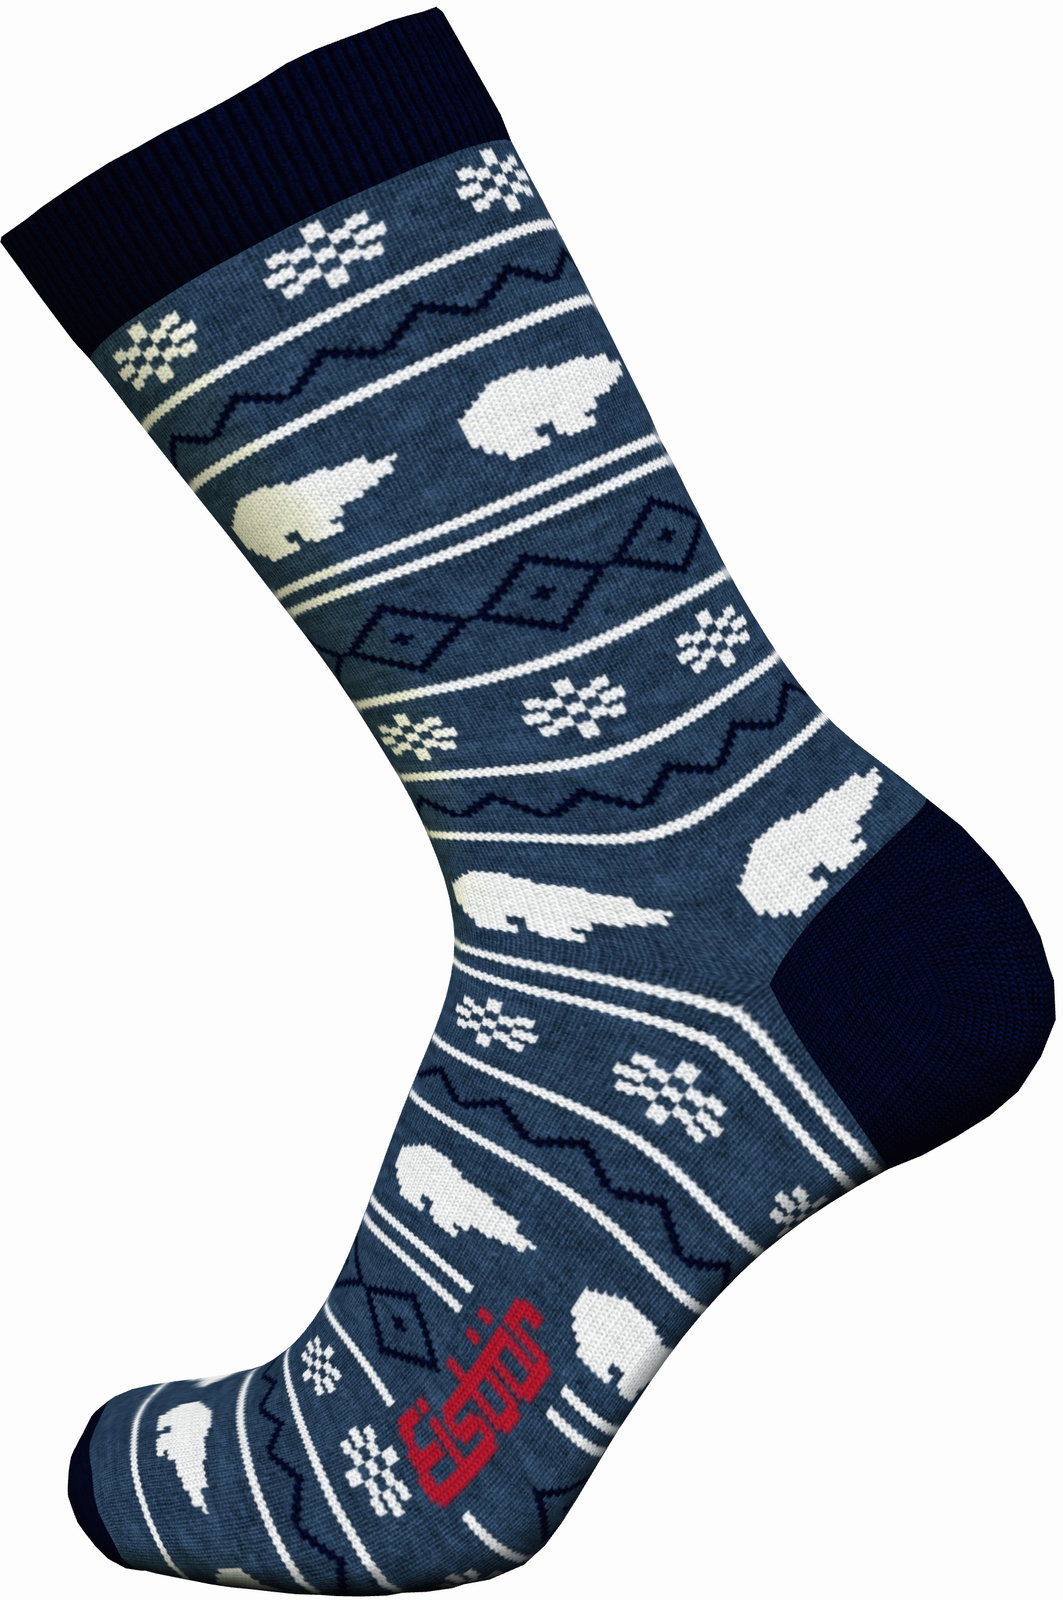 Ski Socks Eisbär Lifestyle Jacquard Avio/Navy-Grey/White 39-42 Ski Socks